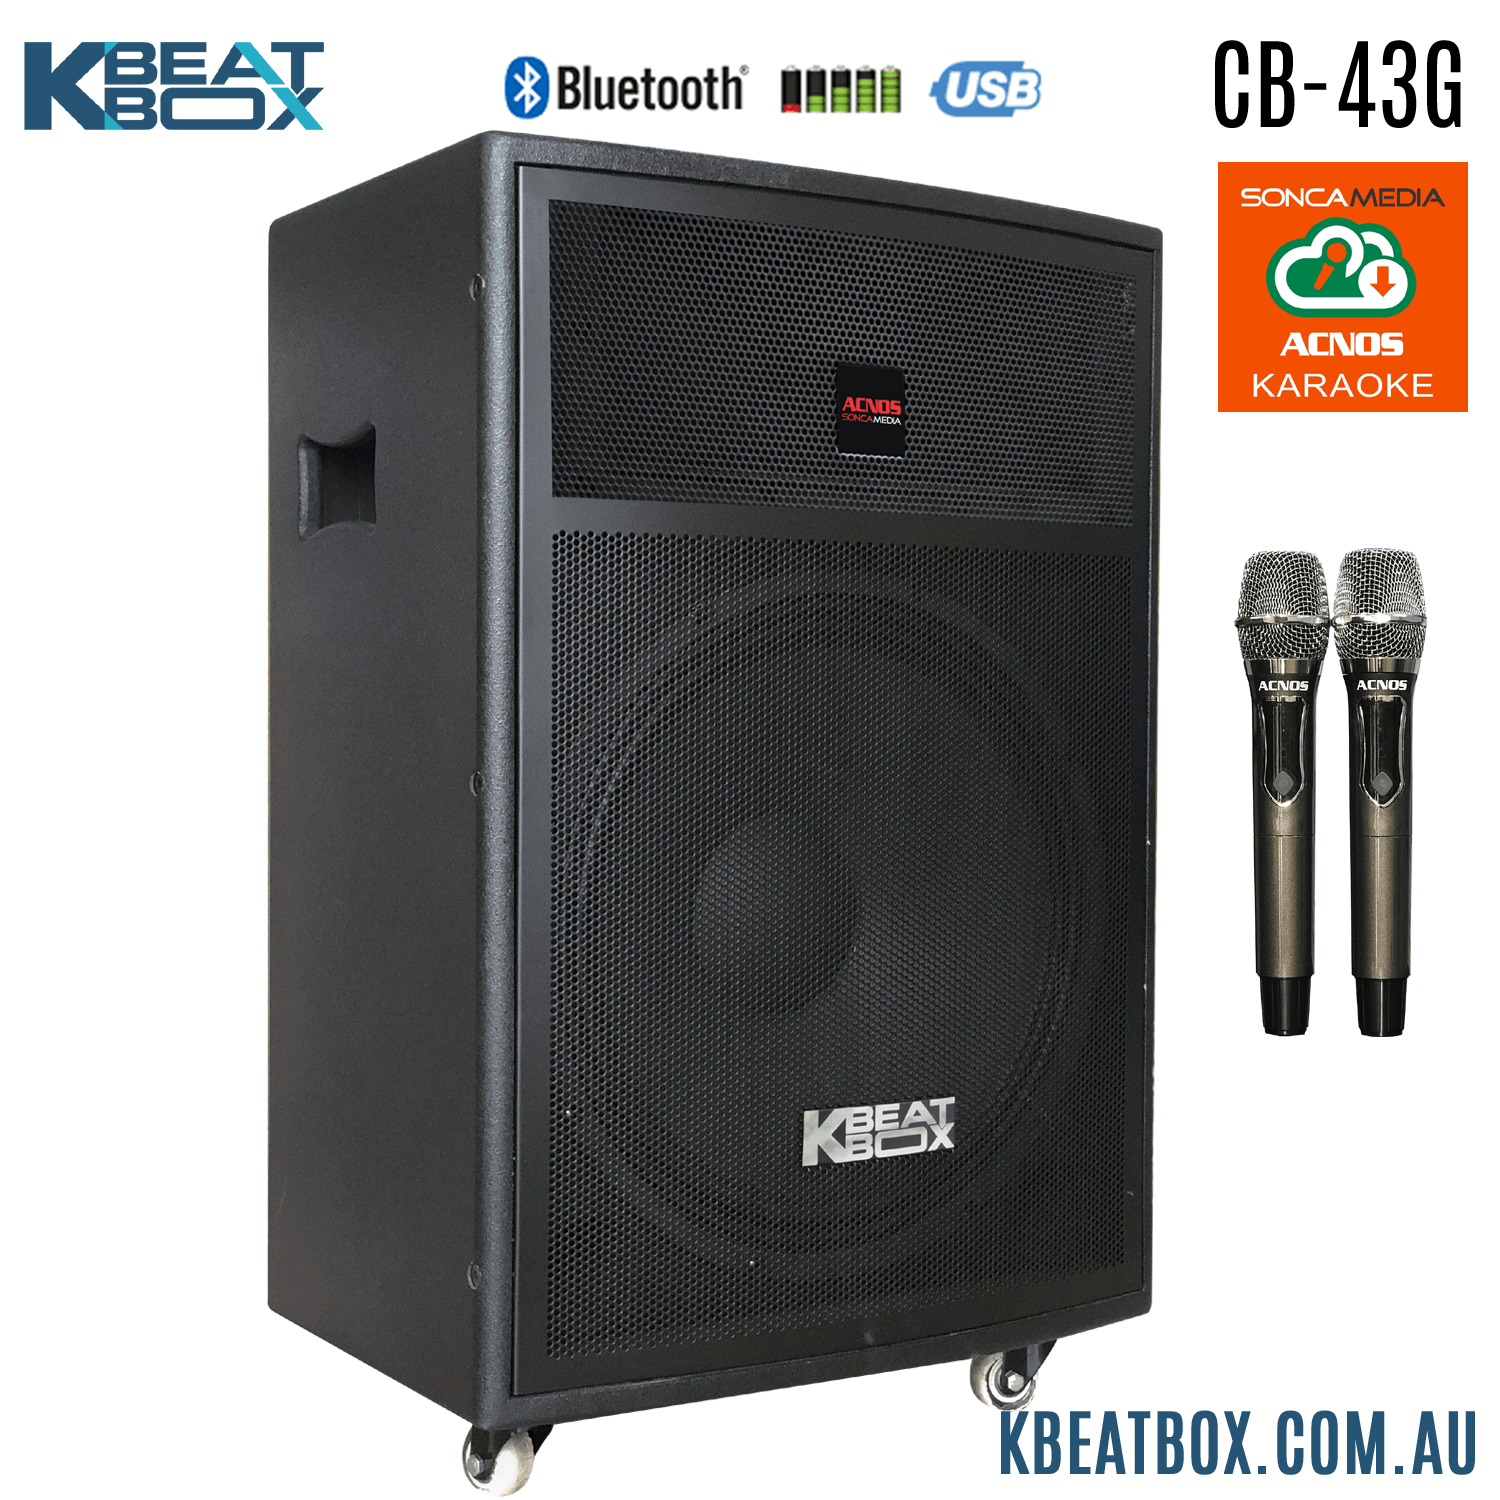 KBeatBox CB-43G [100W RMS / 450W PMPO] Karaoke Powered Speaker System + 2 Wireless Mic's + Karaoke Cloud App - Karaoke Home Entertainment